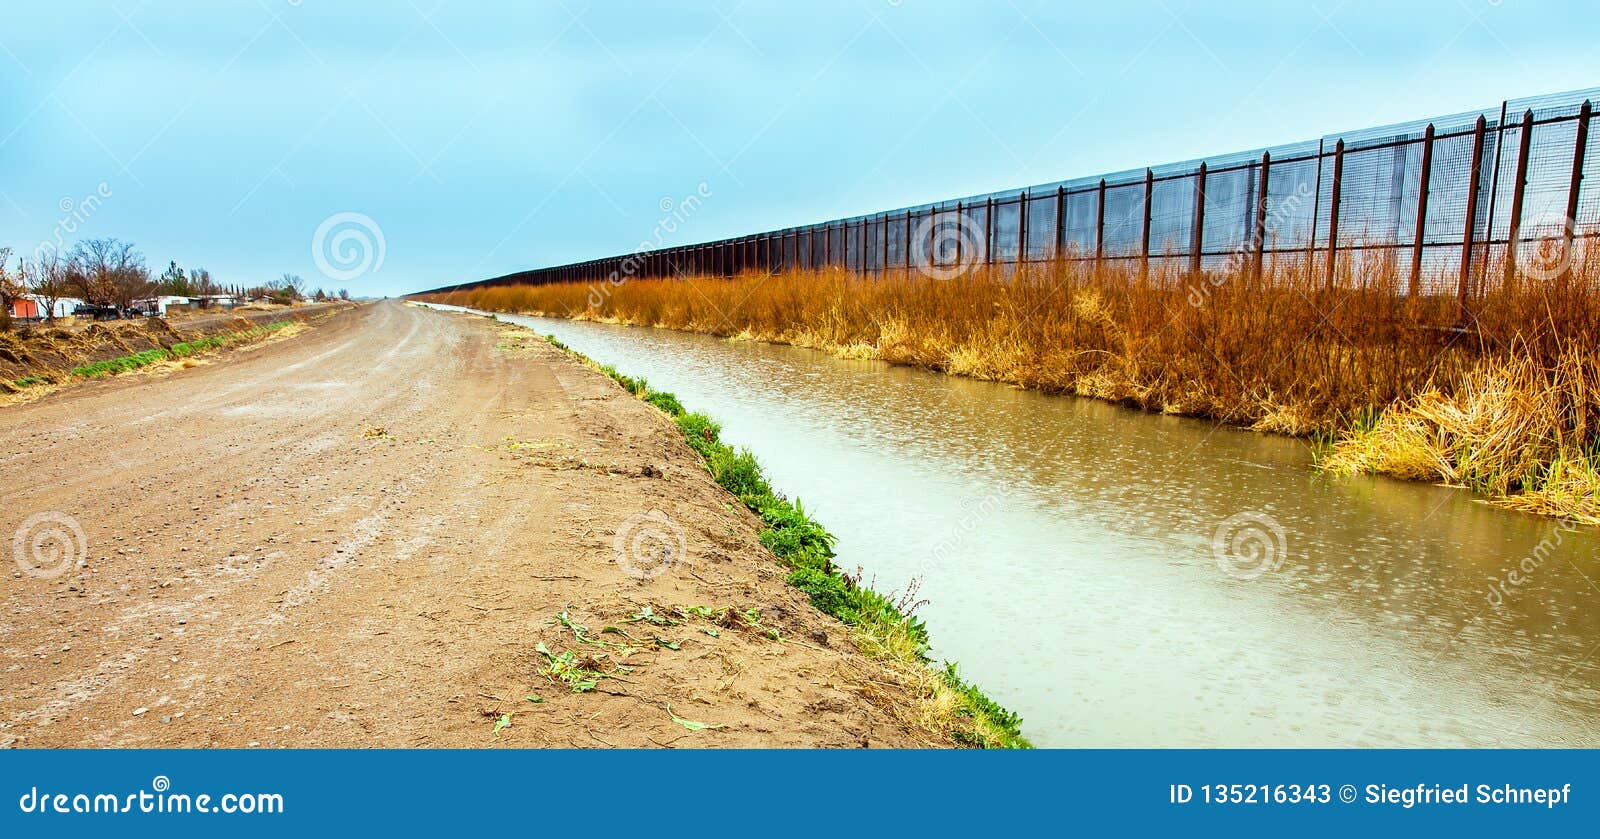 us border fence to mexico at el paso